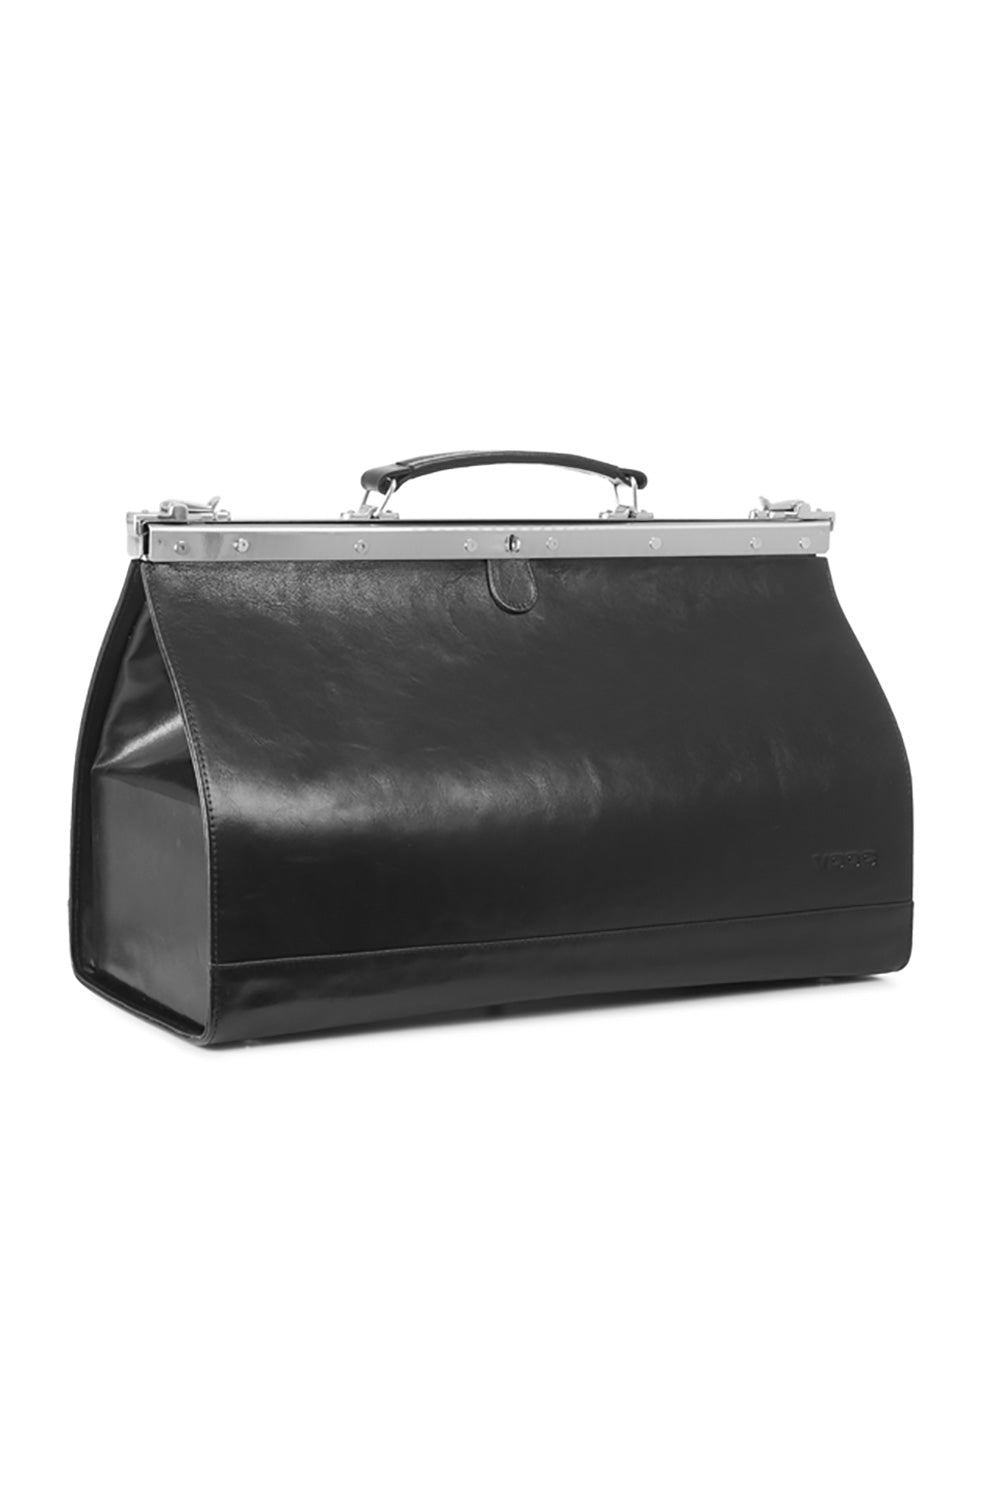 Ladies Casual Shoulder Handbag - Women's Natural leather bag model 152101 - Long Strap - Black Color